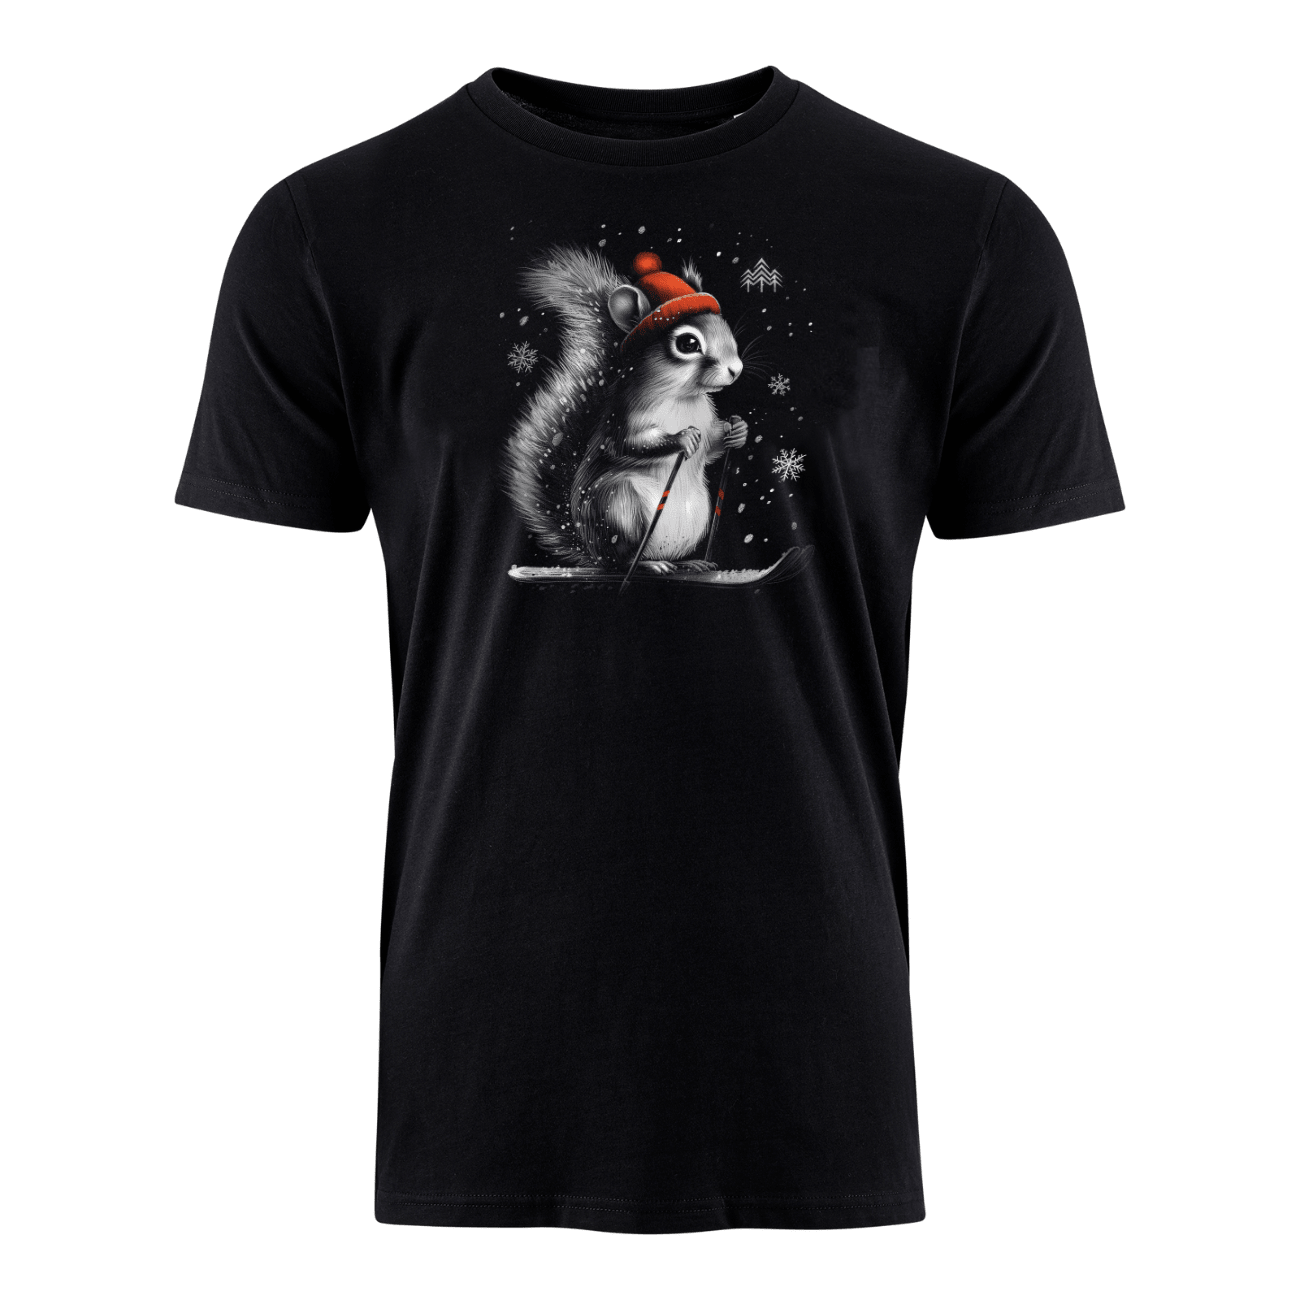 Skihörnchen - Bio Herren Shirt